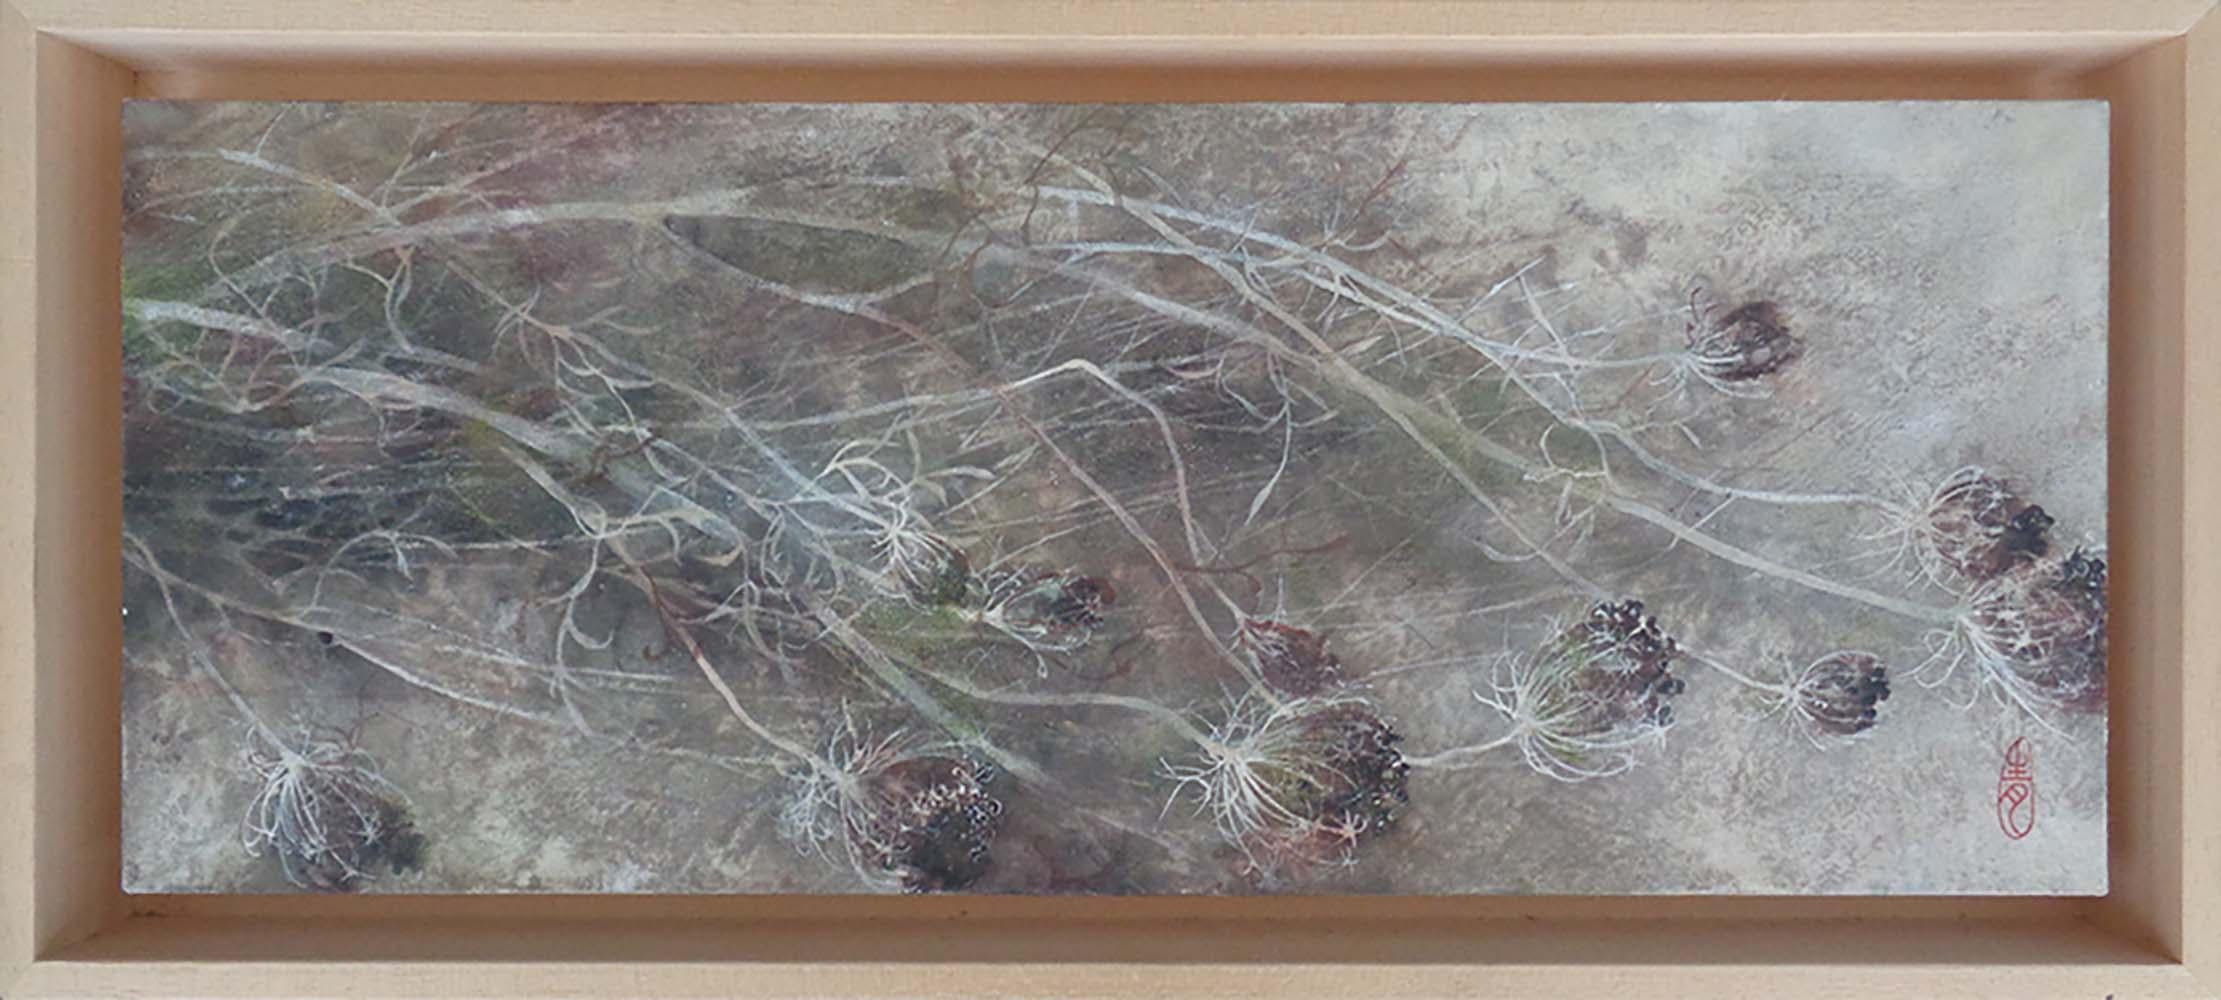 Umbel ist ein einzigartiges Gemälde des zeitgenössischen Künstlers Chen Yiching. Das Gemälde ist mit Mineralpigmenten auf Japanpapier gemalt, das auf Holz aufgezogen ist, und misst 20 × 50 cm. Die Abmessungen des gerahmten Kunstwerks (amerikanischer